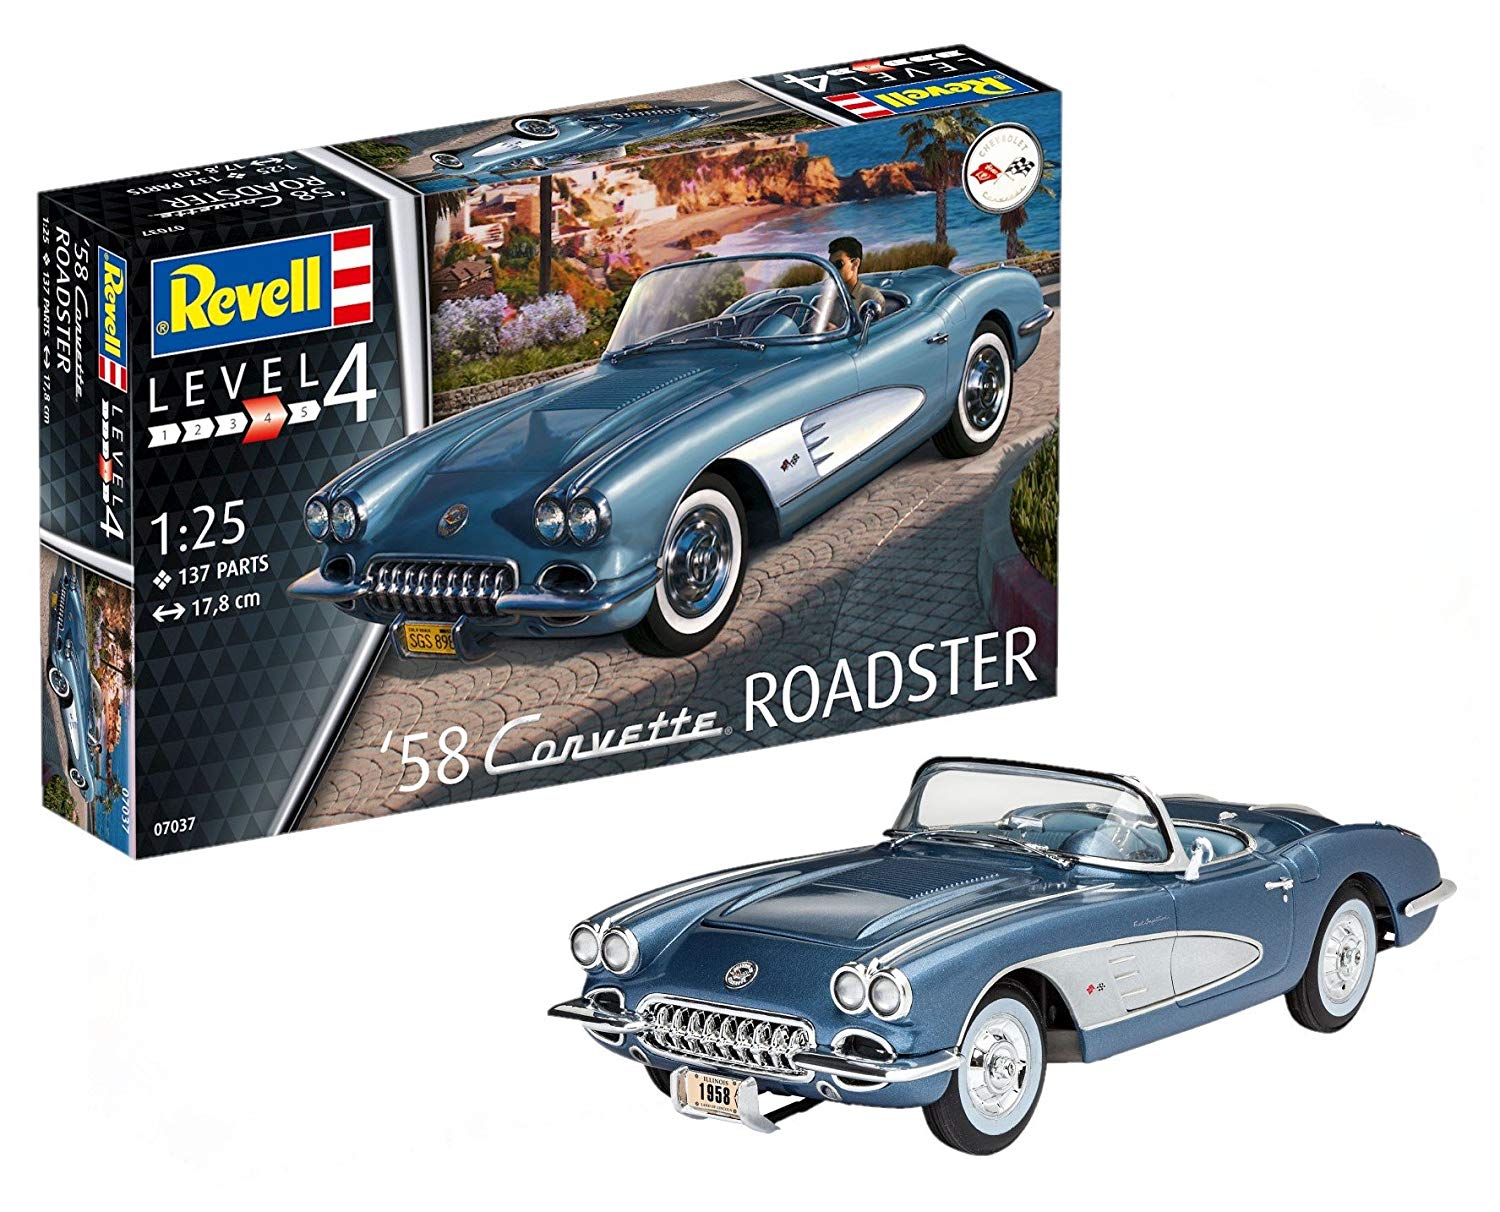 Revell 1: 25 Scale Model Kit 1: 25 – 58 Corvette Roadster, Level 4, Replic